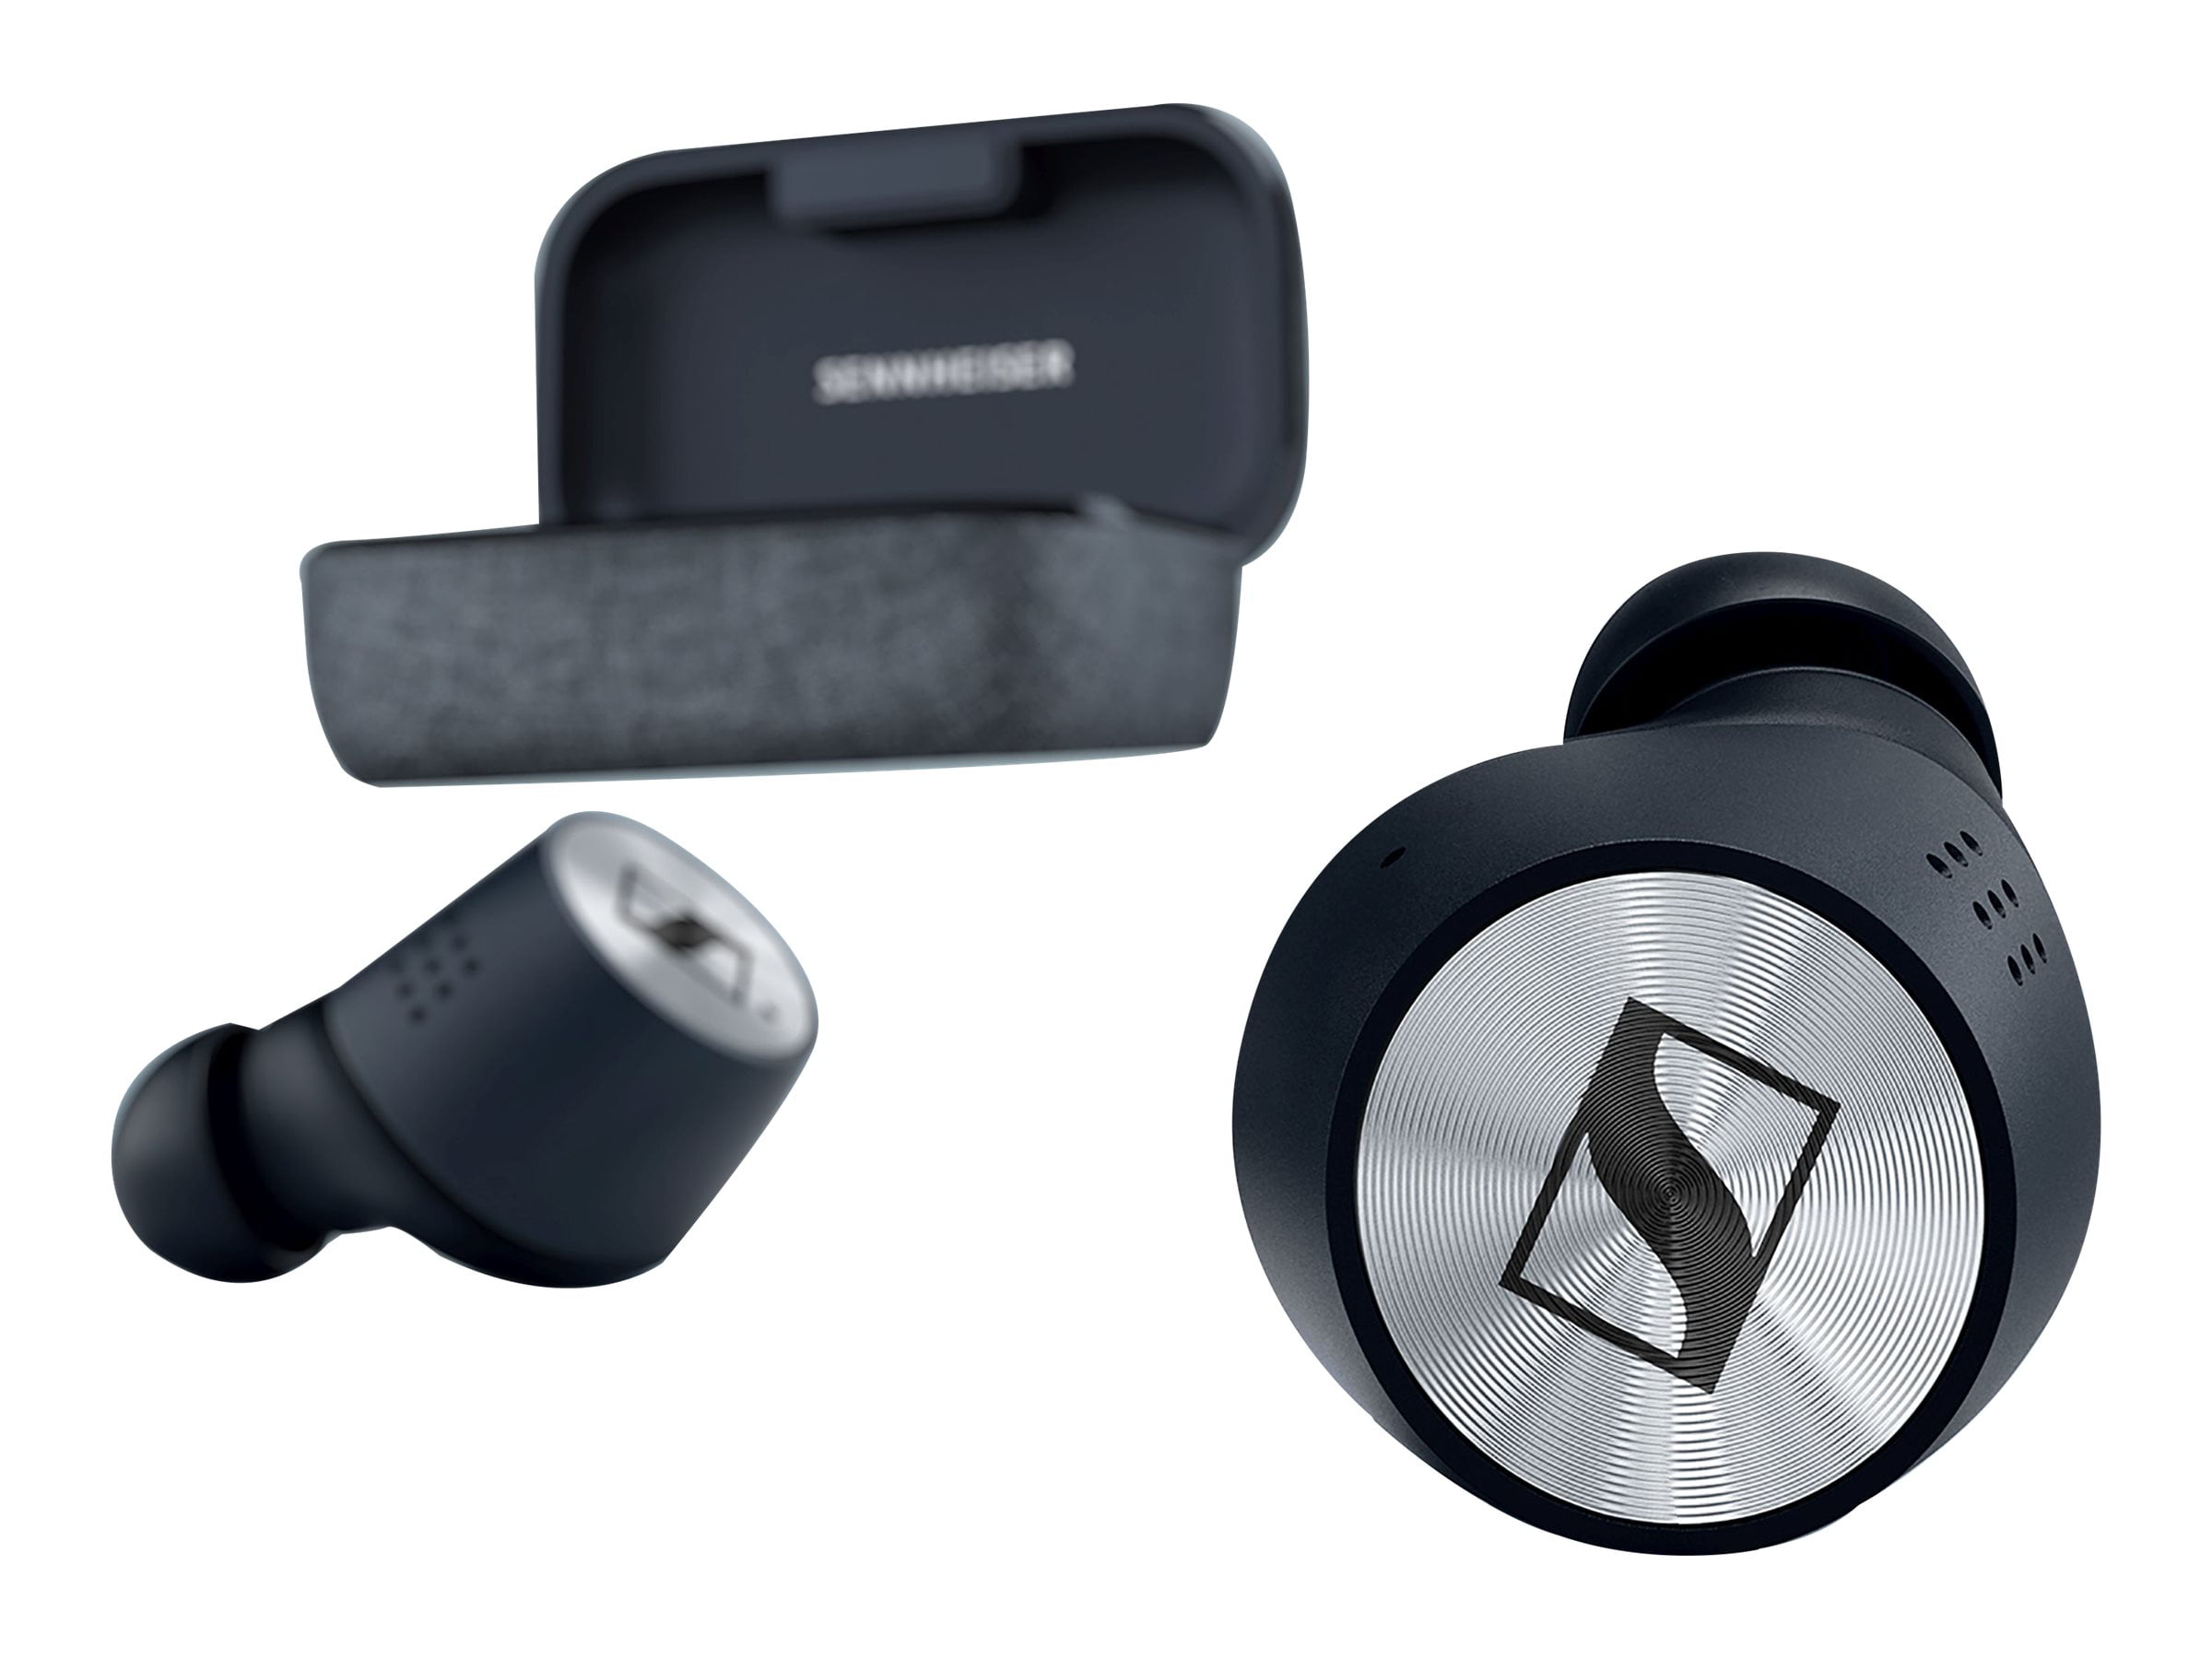 Sennheiser MOMENTUM True Wireless 2 - True wireless earphones with 